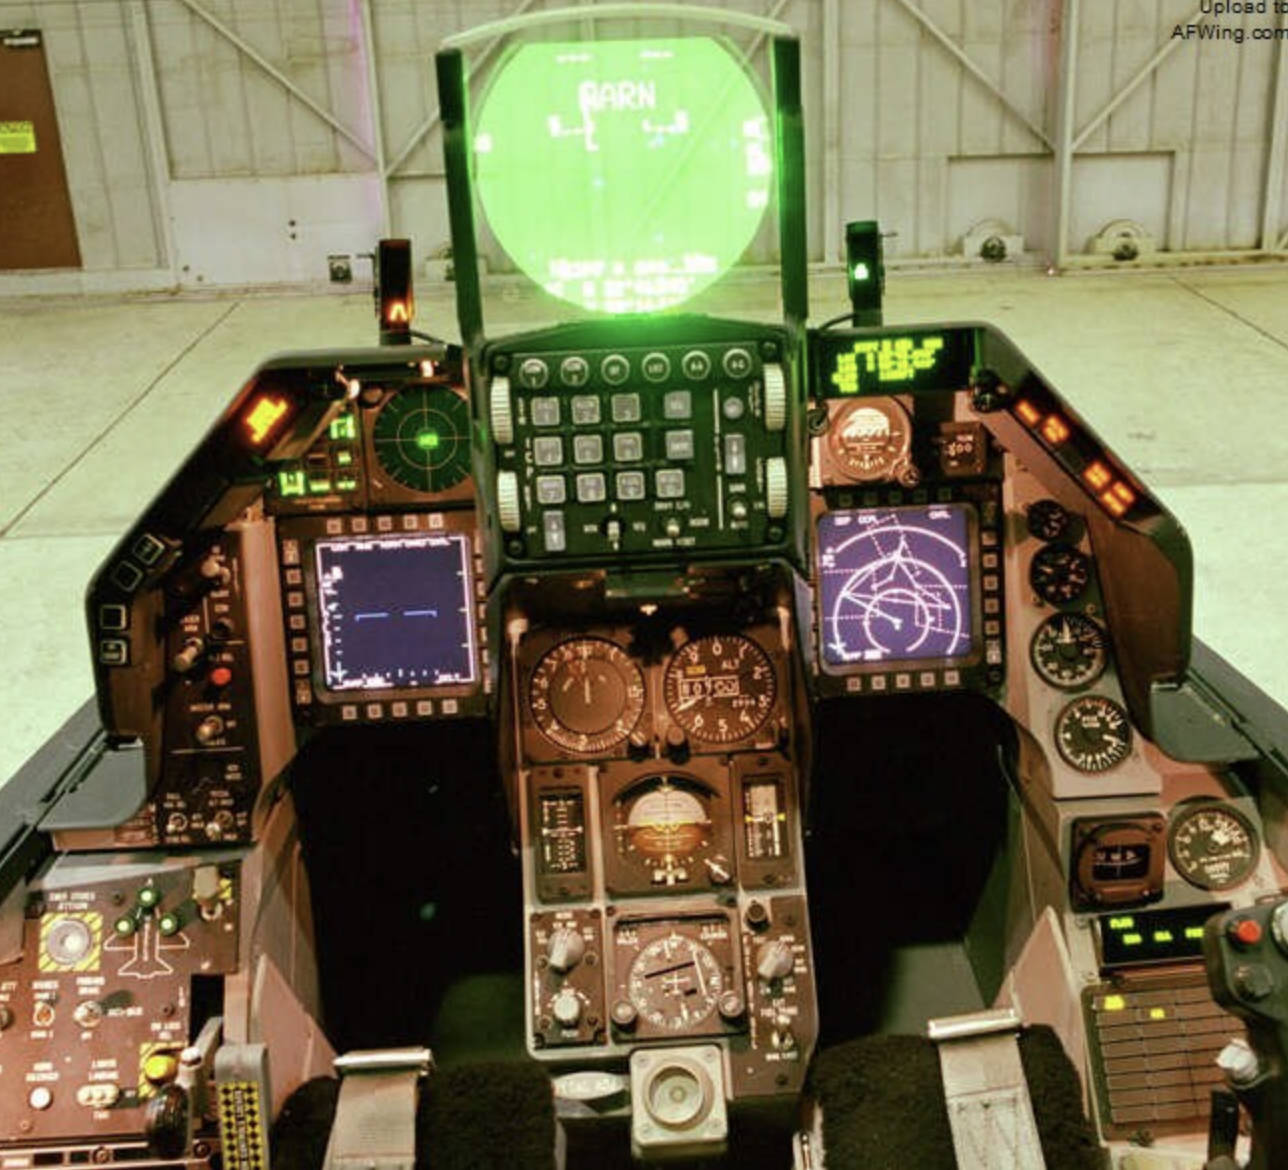 原创f16战斗机座舱进化史从仪表为主到全玻璃化见证科技的进步